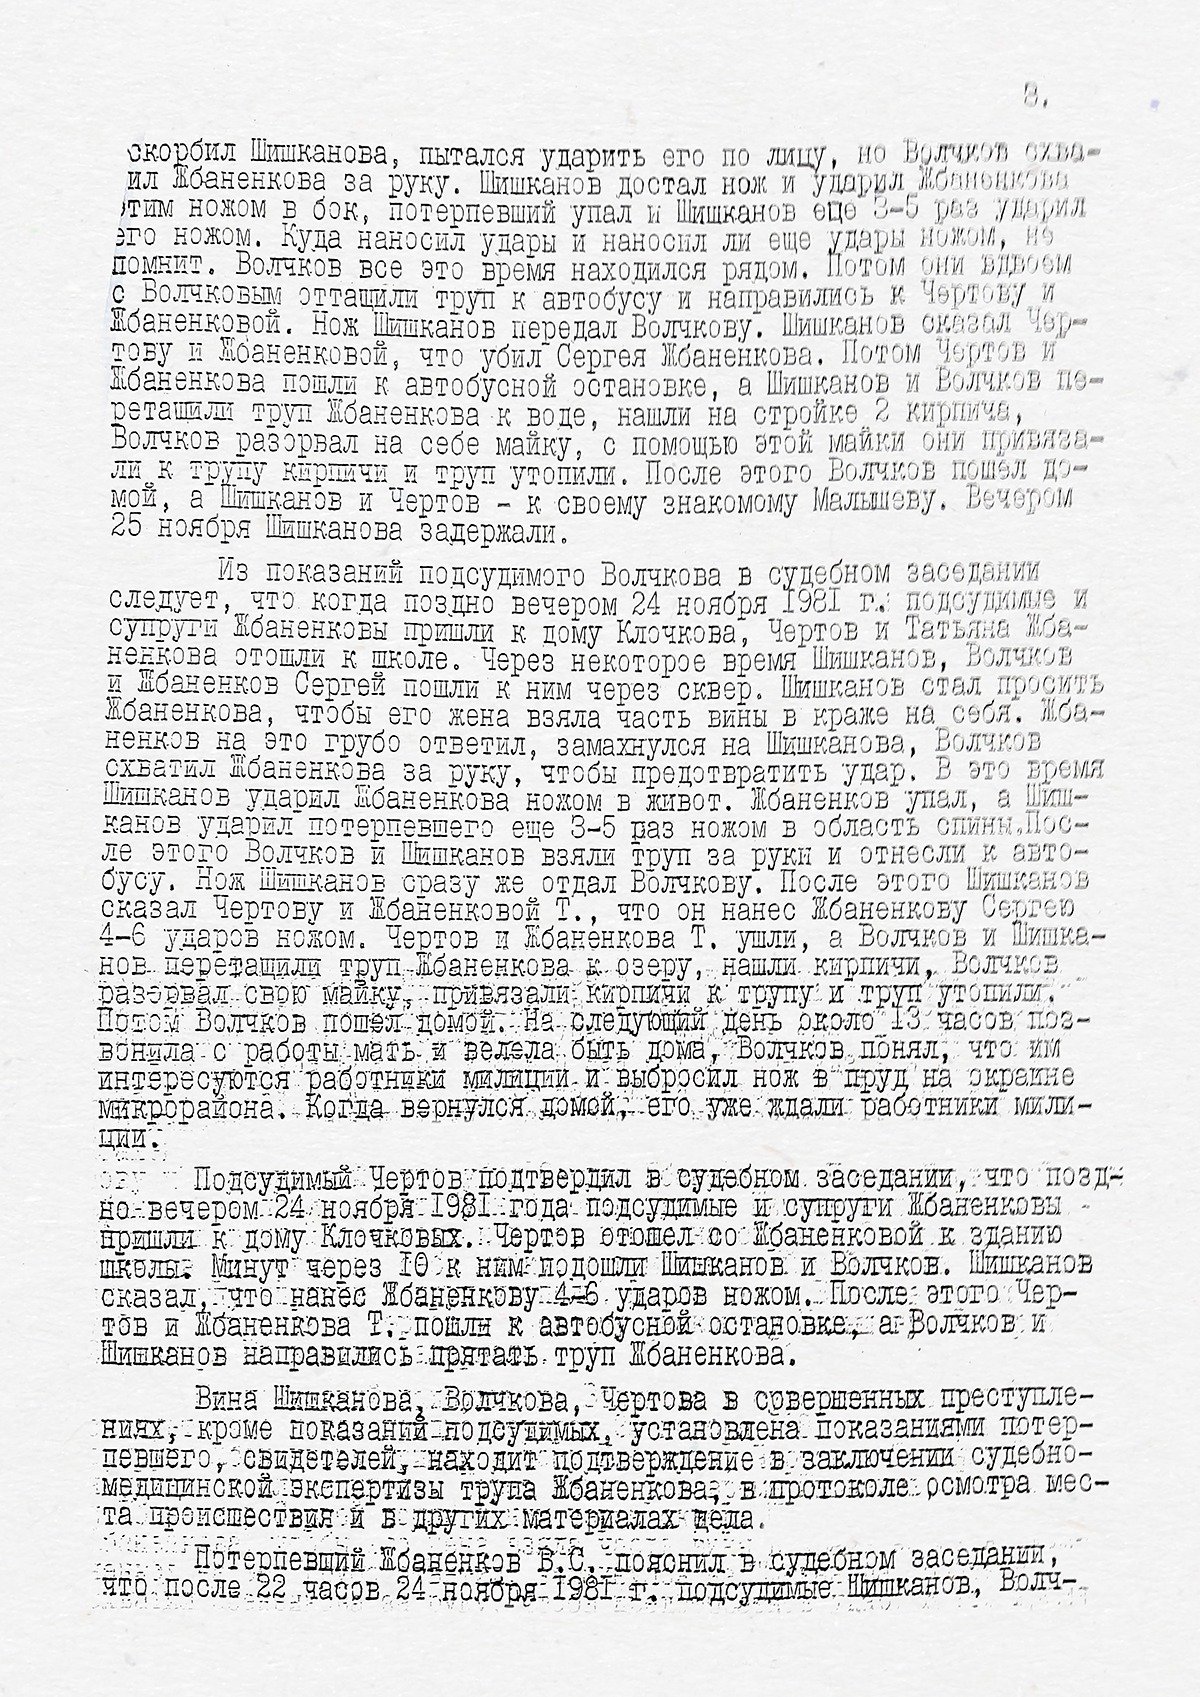 Скан приговора, вынесенного 7 июля 1982 года Мособлсудом. Полностью копия приговора доступна по ссылке